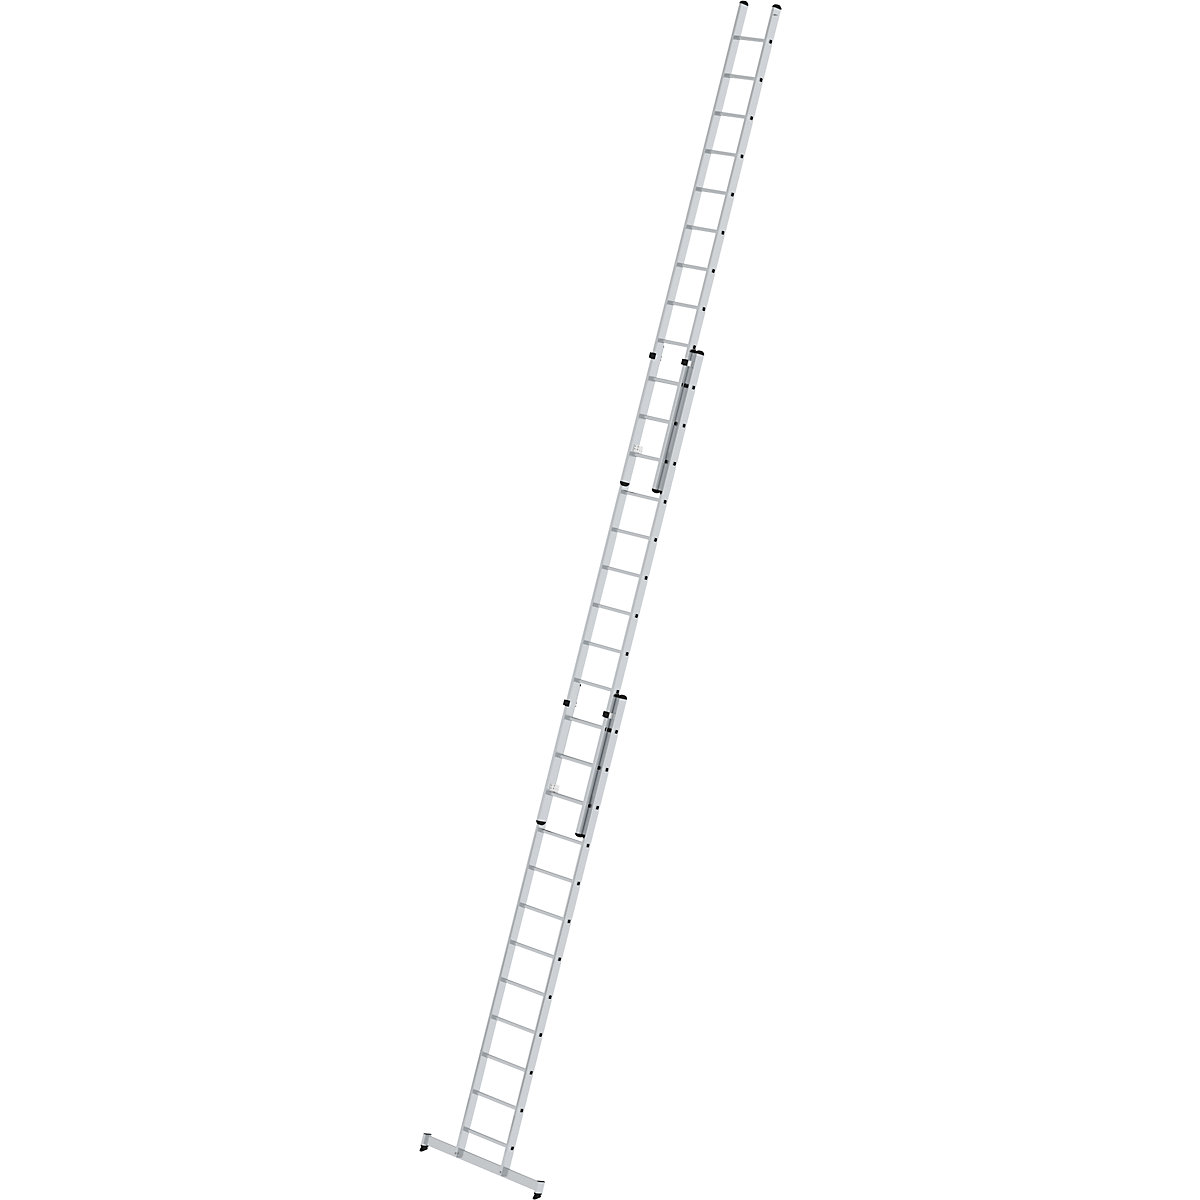 Aanlegladder, in hoogte verstelbaar – MUNK, schuifladder, 3-delig met nivello®-stabiliteitsbalk, 3 x 12 sporten-7